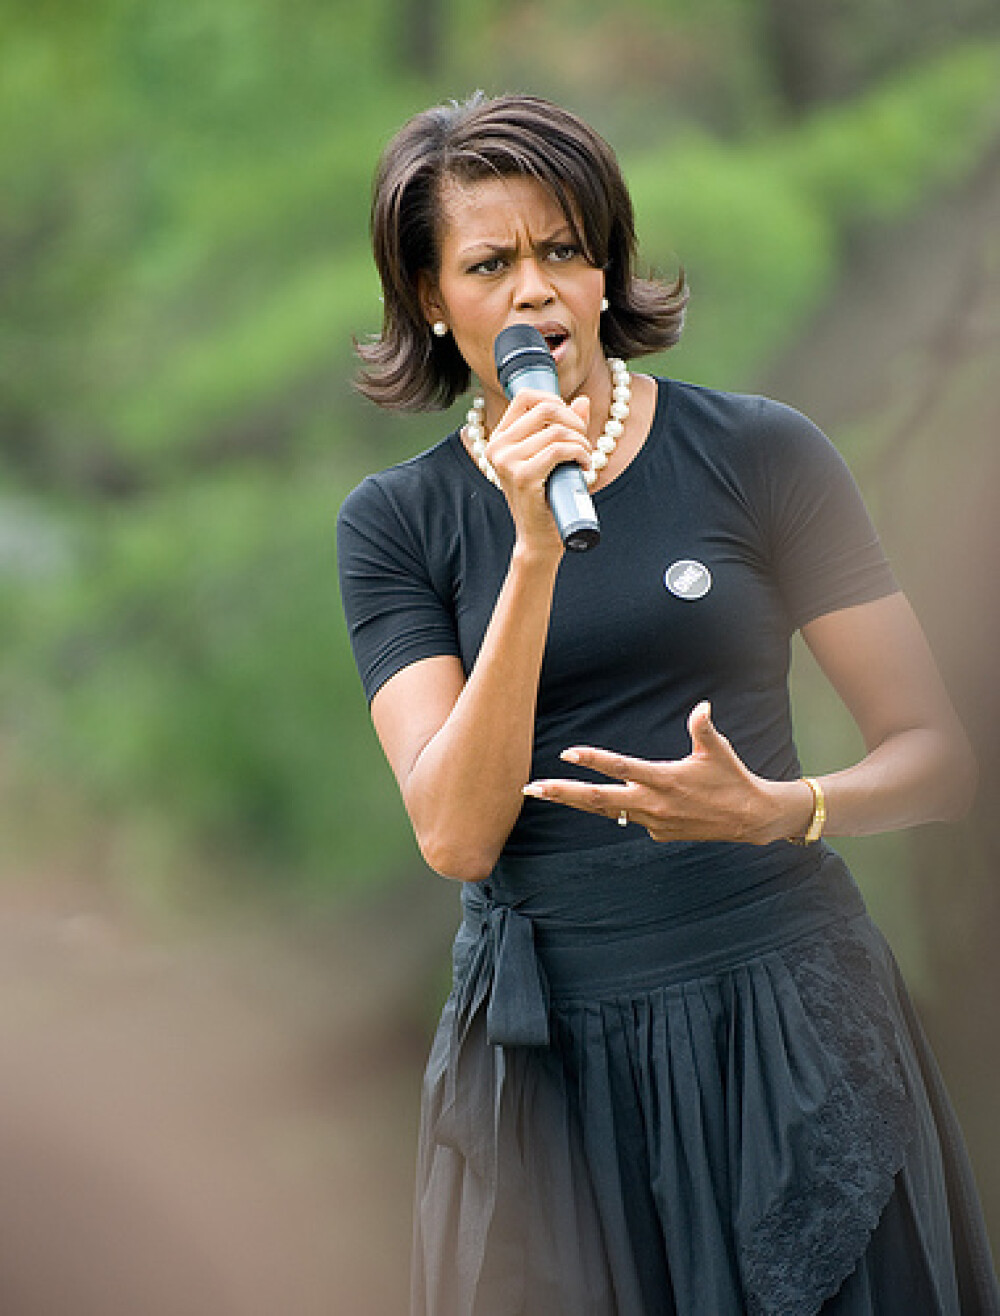 Michelle Obama împlinește 60 de ani. Imagini de colecție cu Prima Doamnă a Statelor Unite | GALERIE FOTO - Imaginea 26